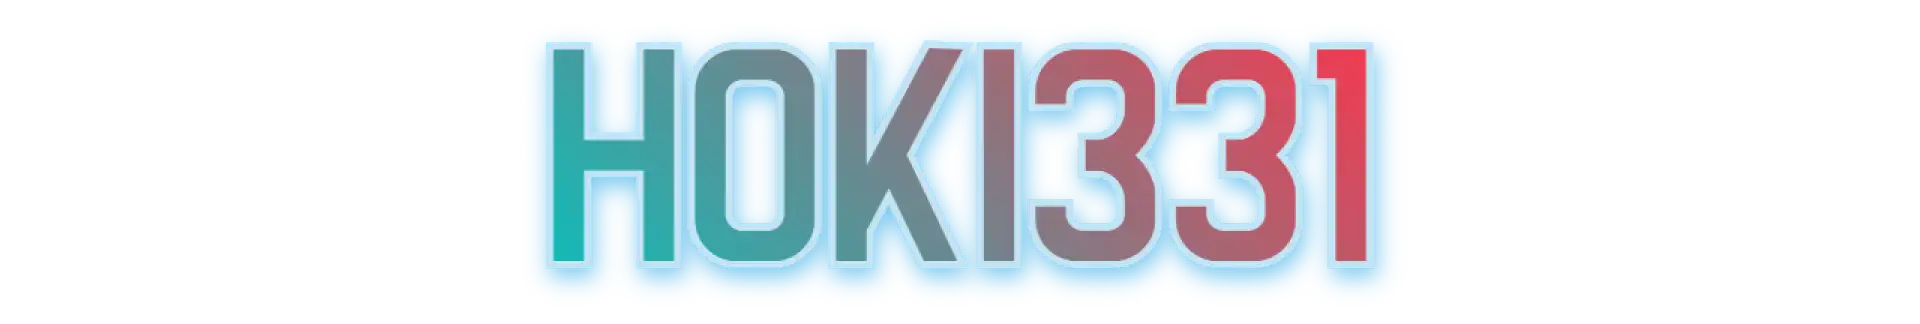 Hoki331